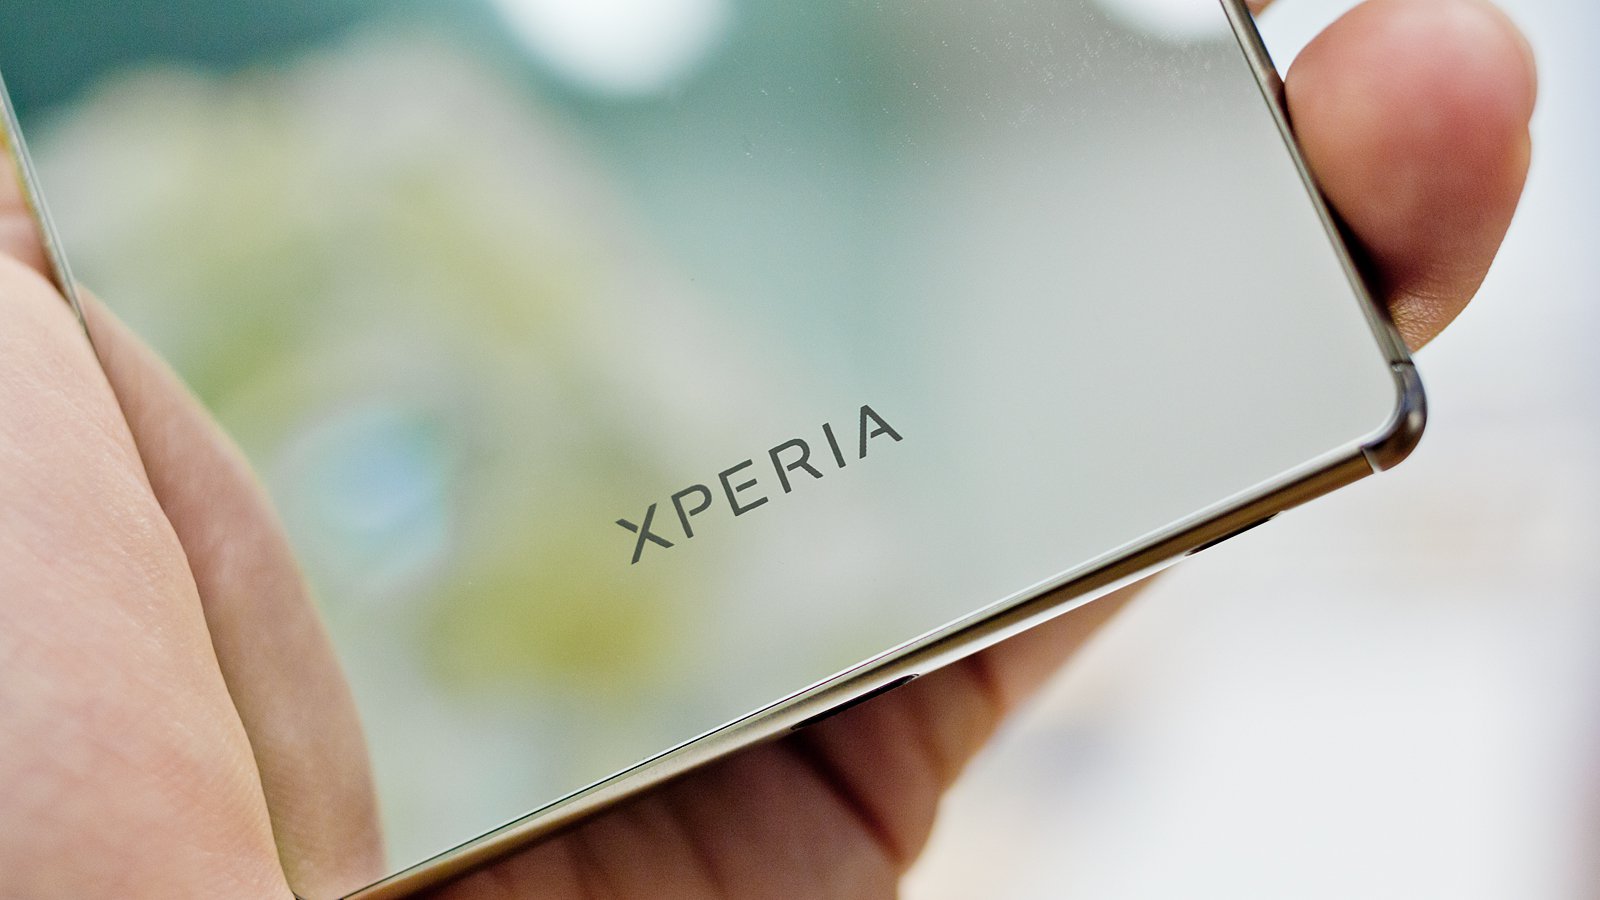 Xperia-Z5-Premium-Back.jpg